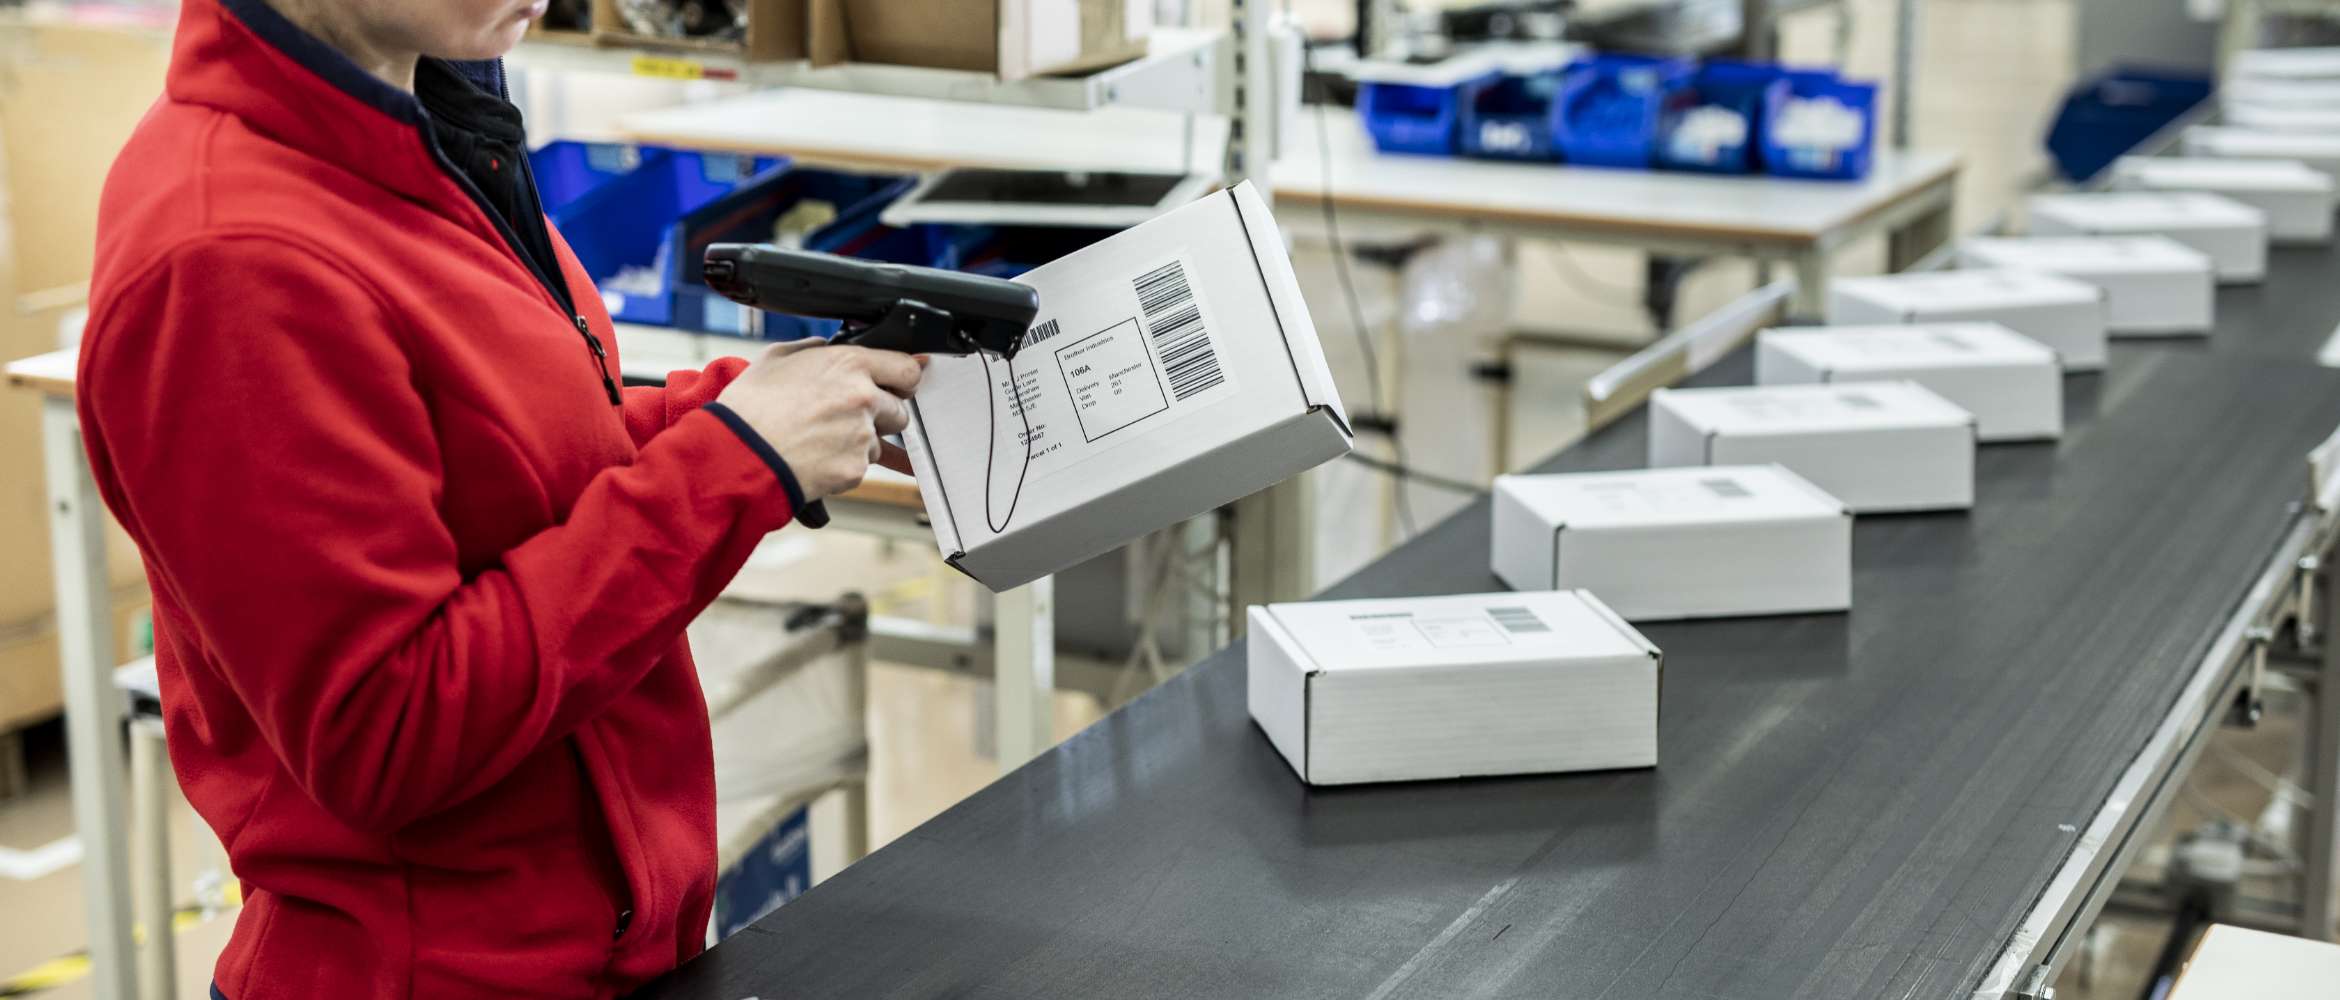 La ligne de production d'usine est remplie de colis emballés tandis qu'un ouvrier scanne une étiquette d'adresse avec un code-barres imprimée dans un entrepôt